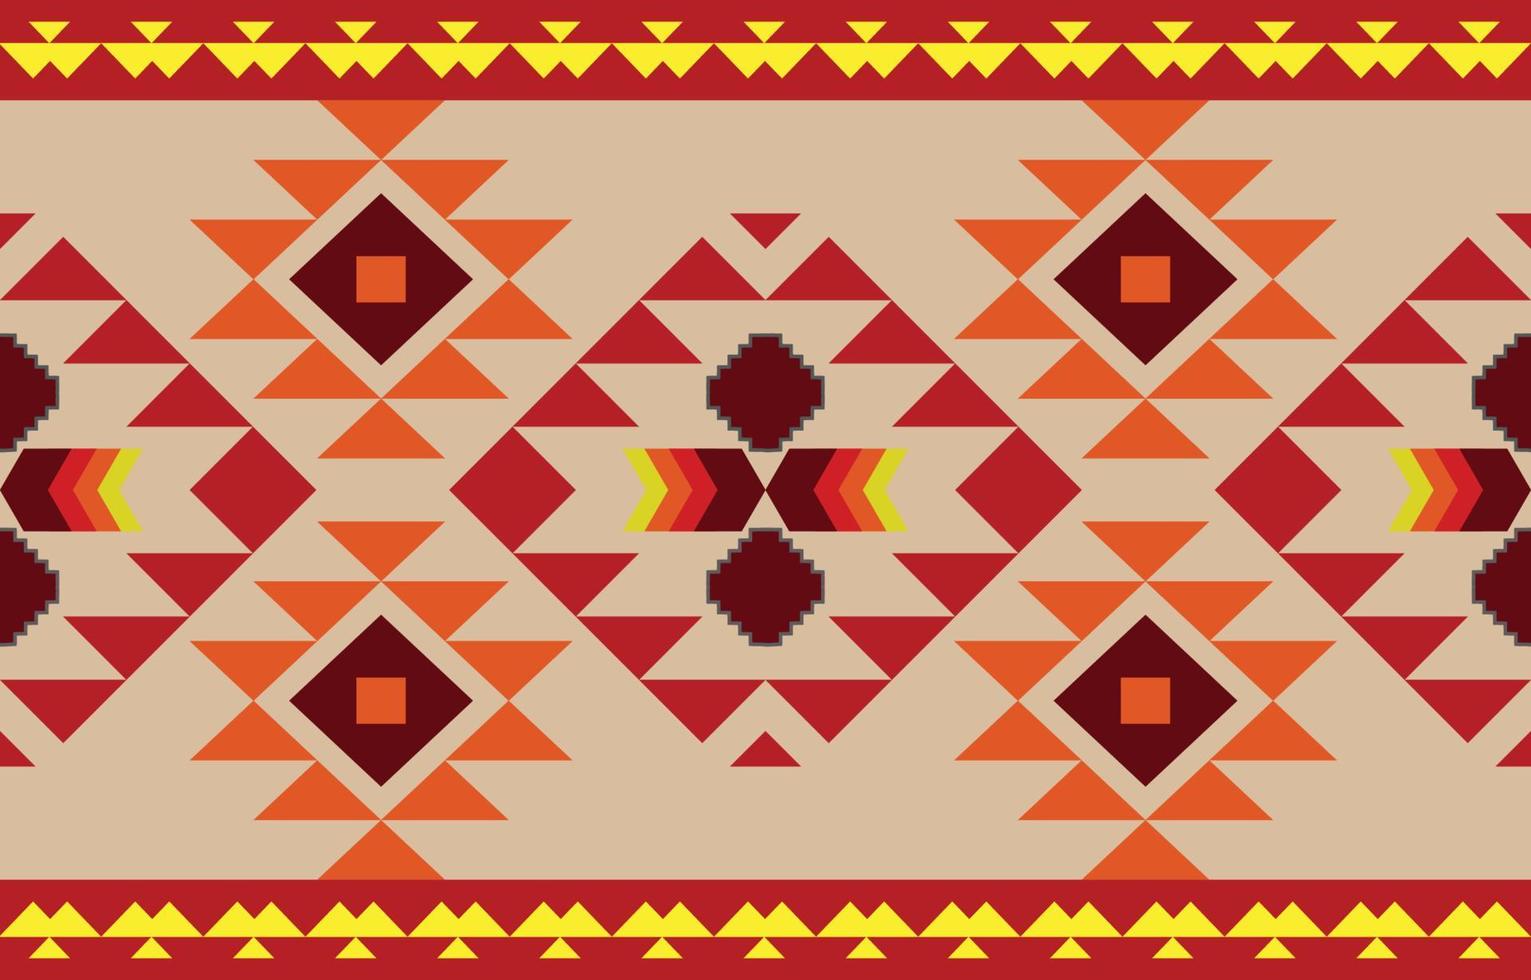 Bạn có muốn khám phá mẫu hoa văn bản dệt của người bản địa Navajo - một trong những bộ phận quan trọng của văn hóa Mỹ? Với những chi tiết tỉ mỉ và màu sắc phong phú, chắc chắn bạn sẽ bị cuốn hút bởi sự độc đáo và đẹp mắt của chúng.